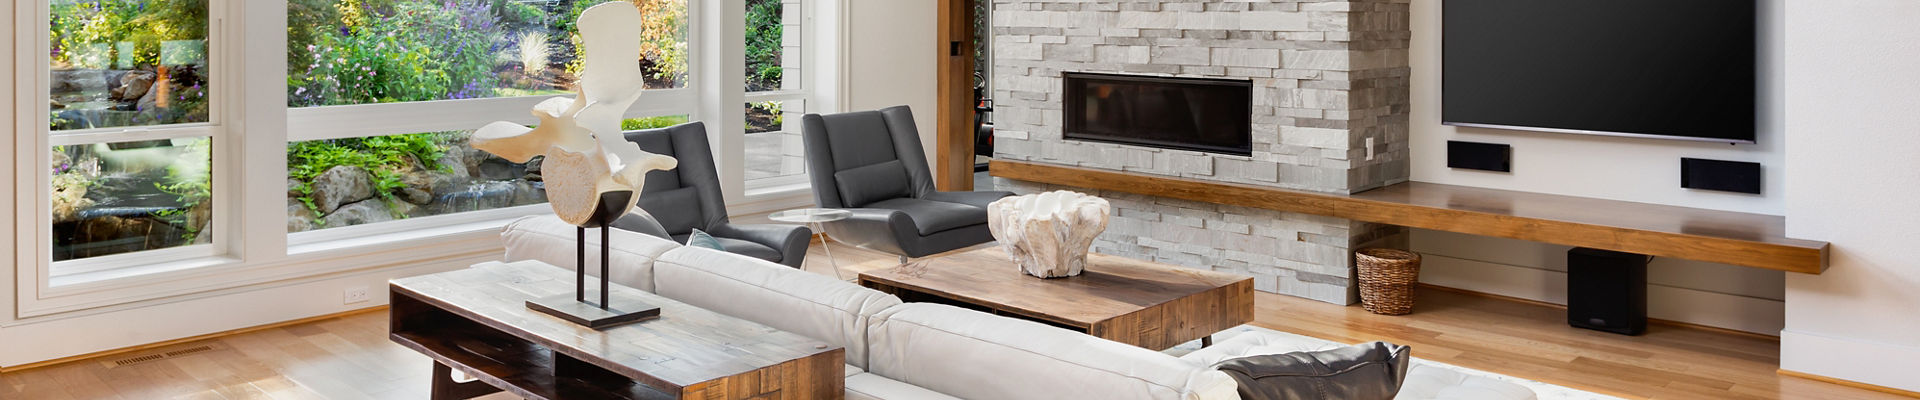 Sofá moderno na sala de estar com piso de madeira